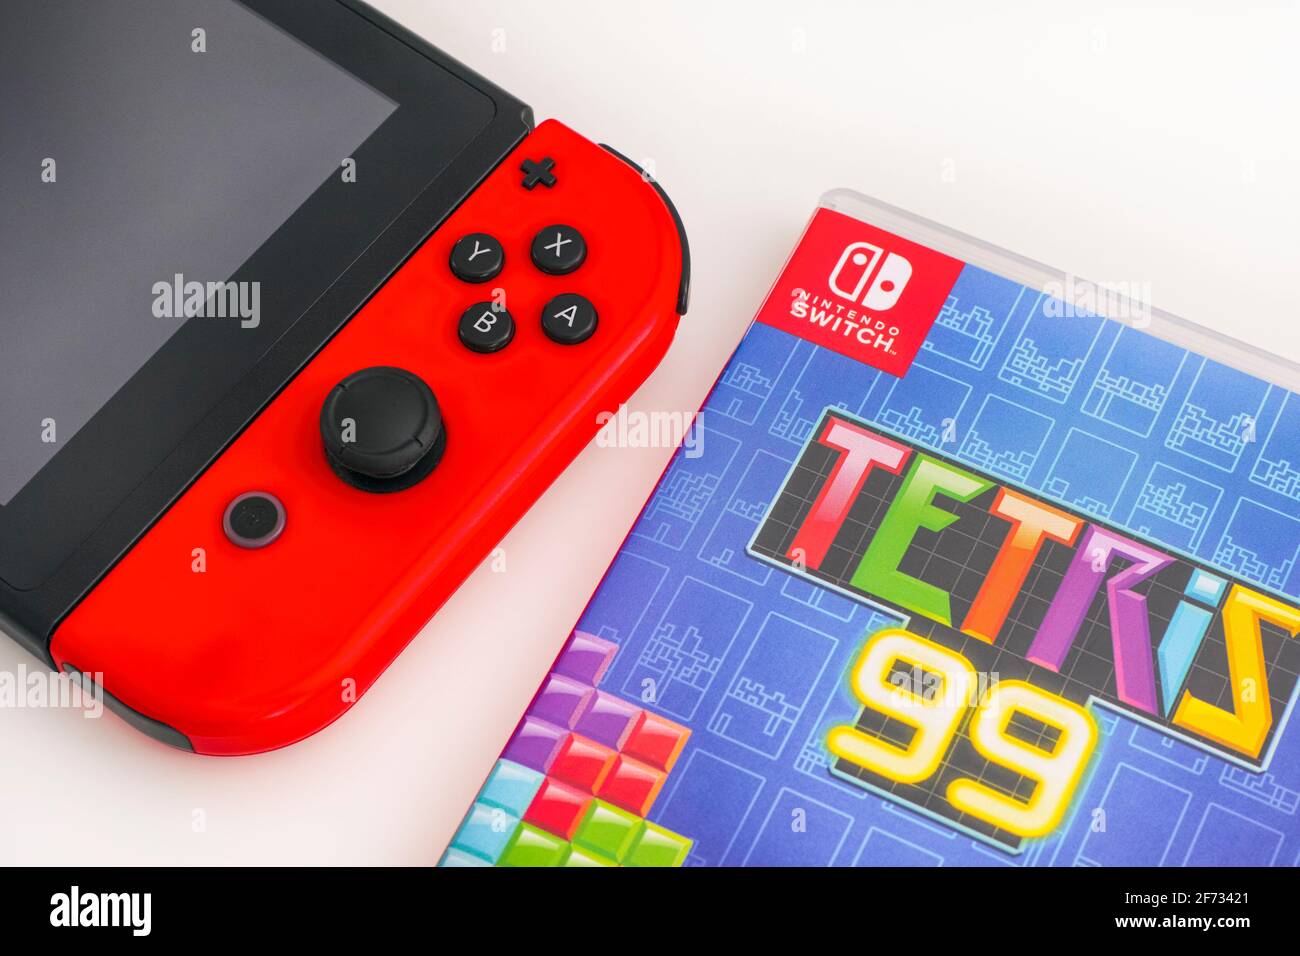 Tambow, Russische Föderation - 01. Januar 2021 Tetris 99 Videospielbox und Nintendo  Switch Videospielkonsole auf weißem Hintergrund Stockfotografie - Alamy